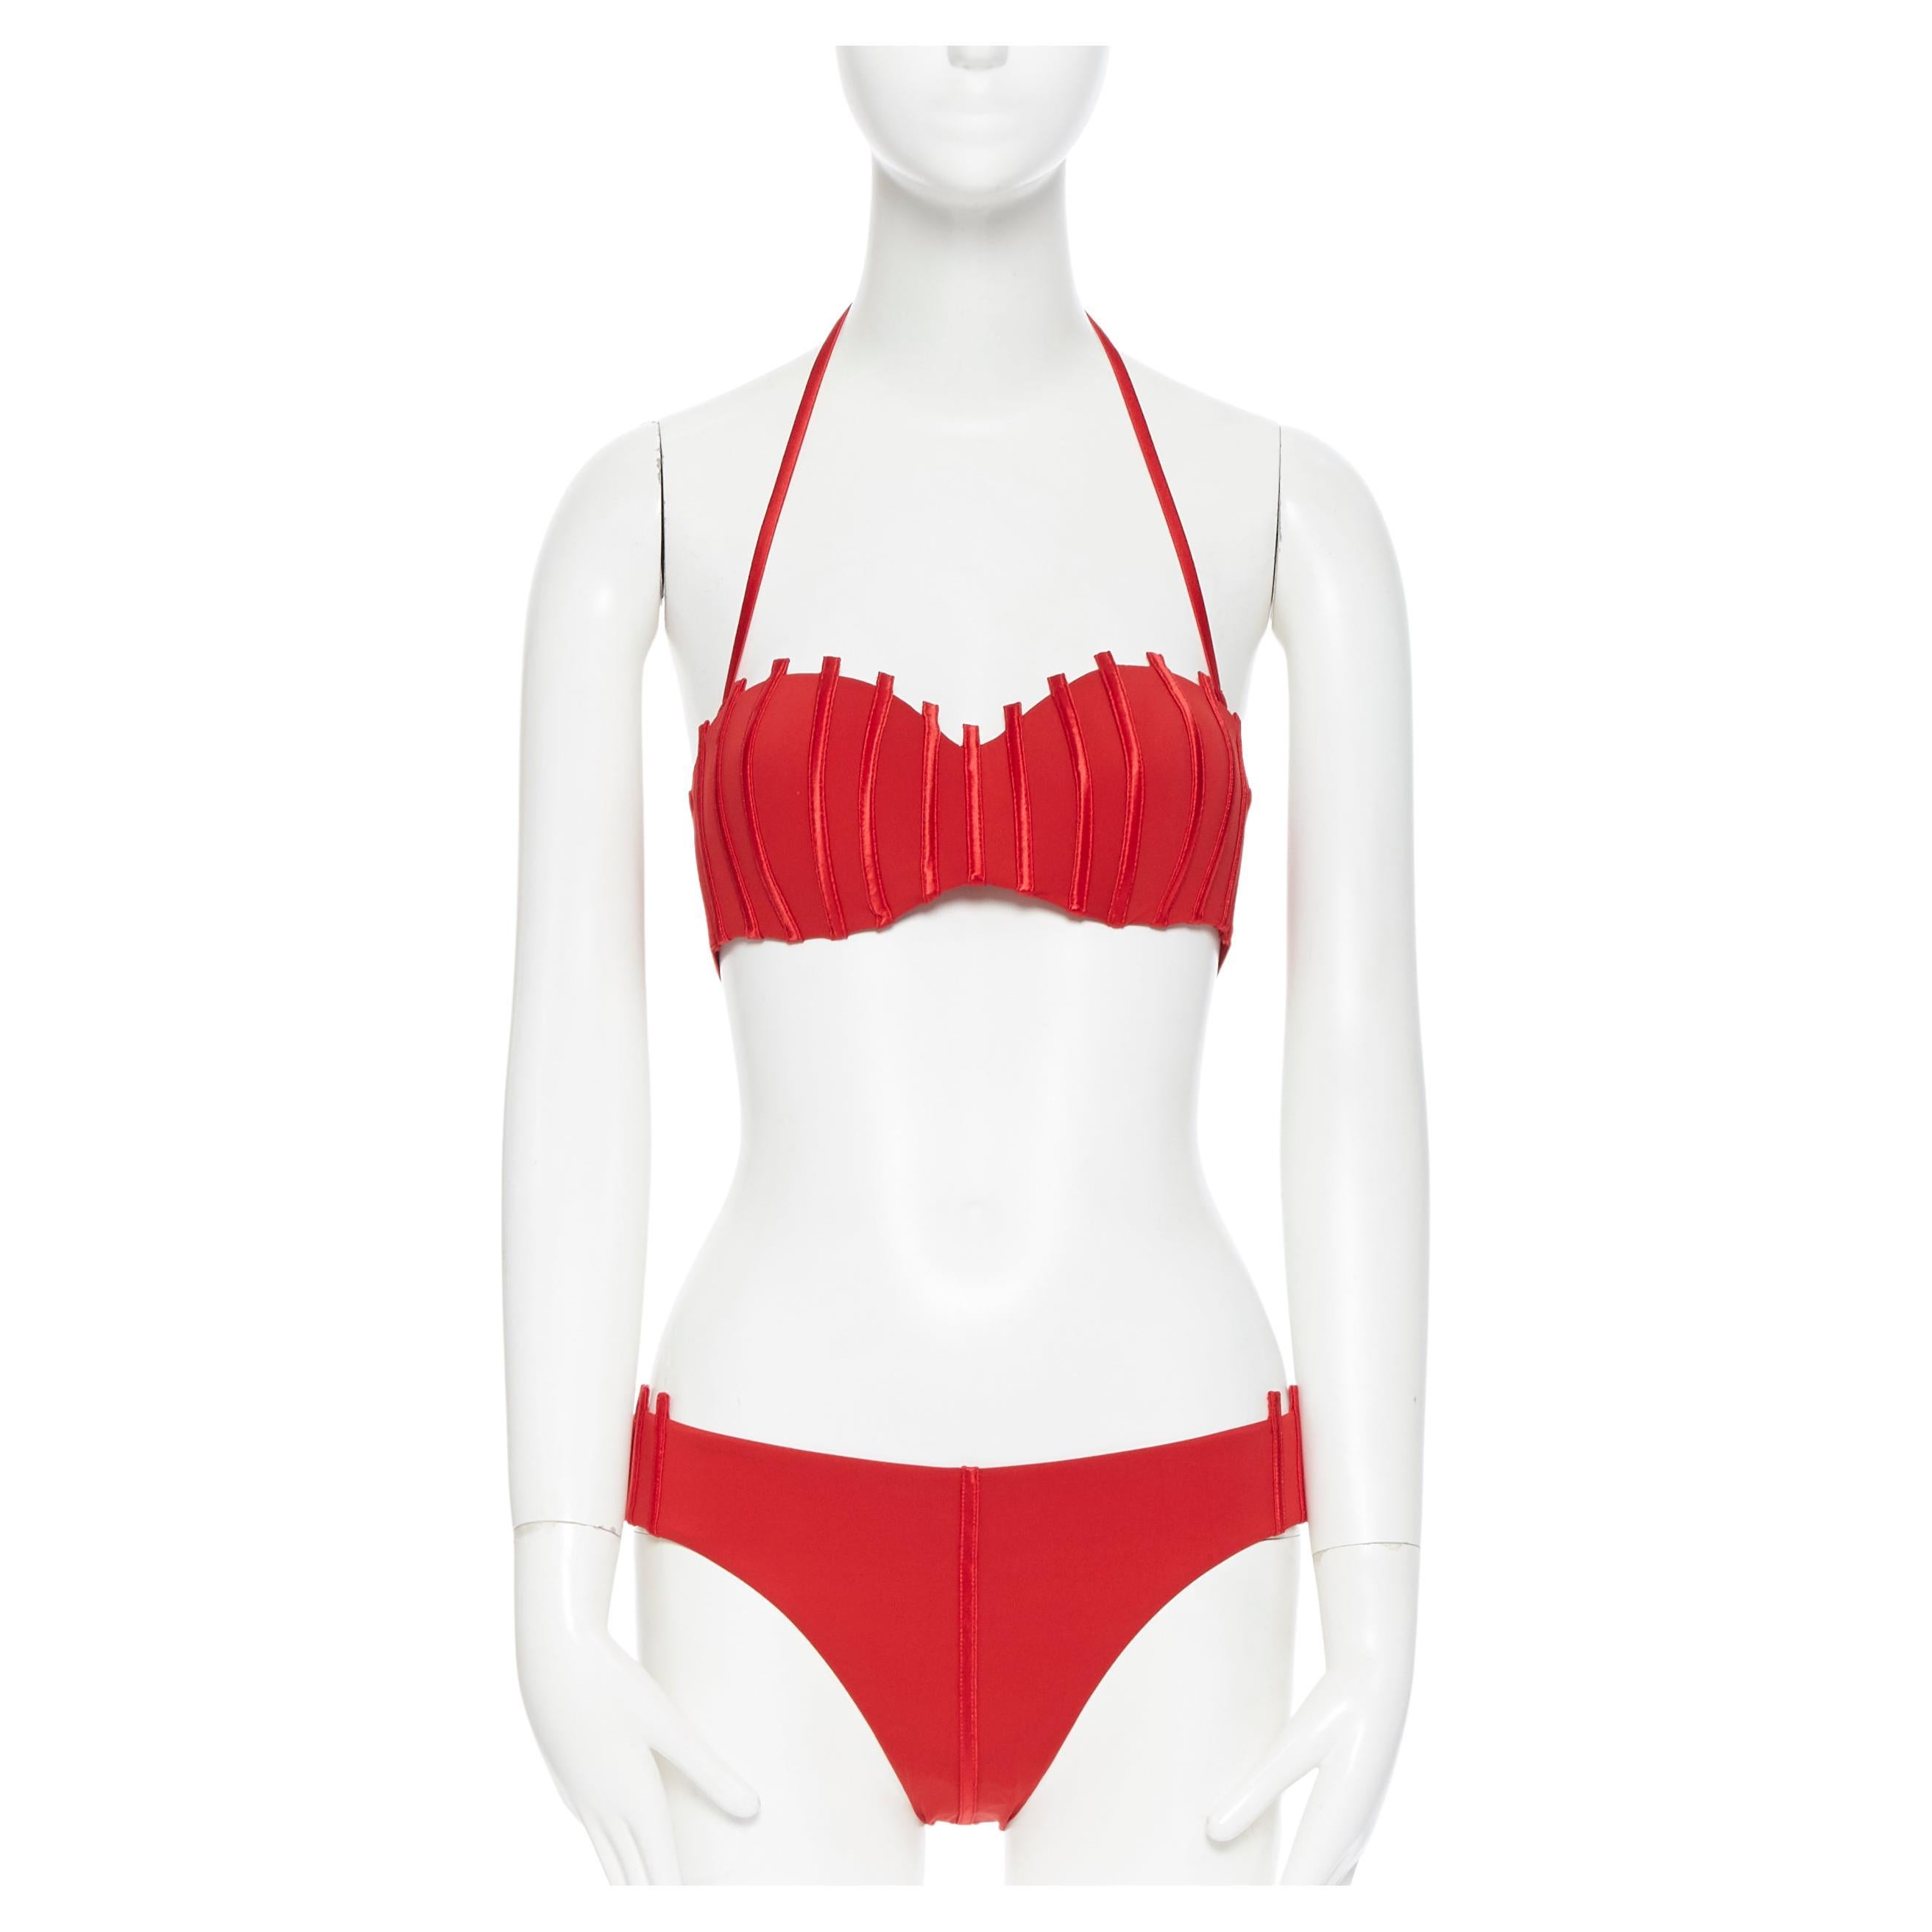 new LA PERLA Graphique Couture red boned sheer body 2-pc bikini swimsuit IT44B M